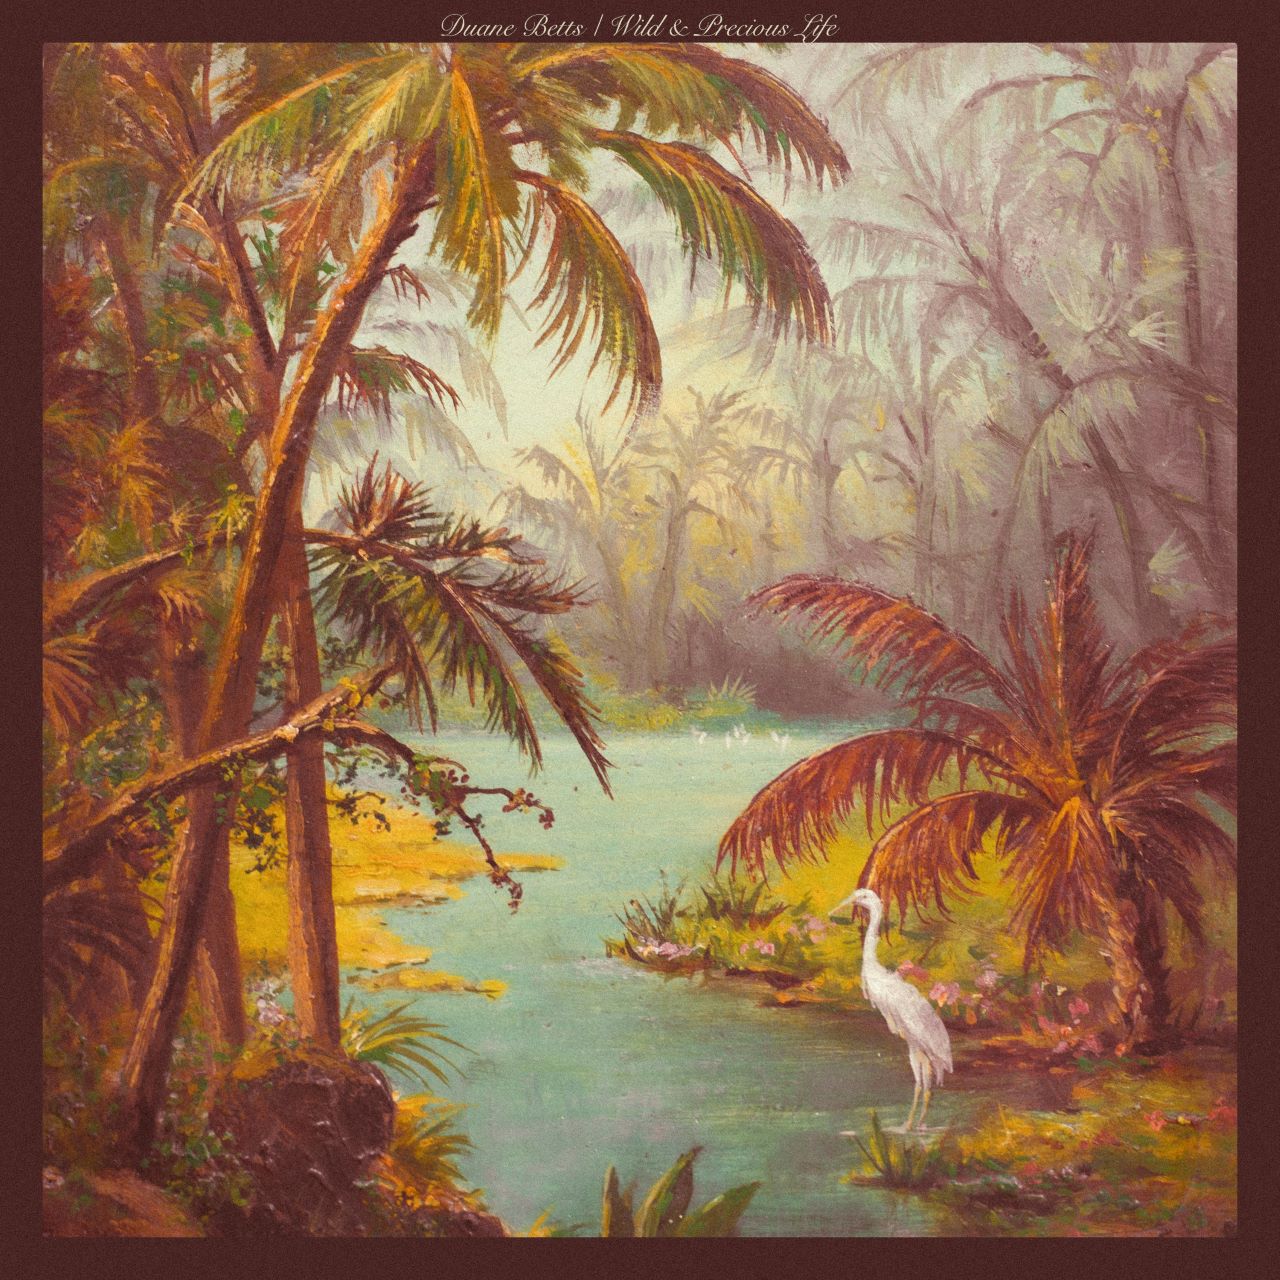 Duane Betts - Wild & Precious Life cover album